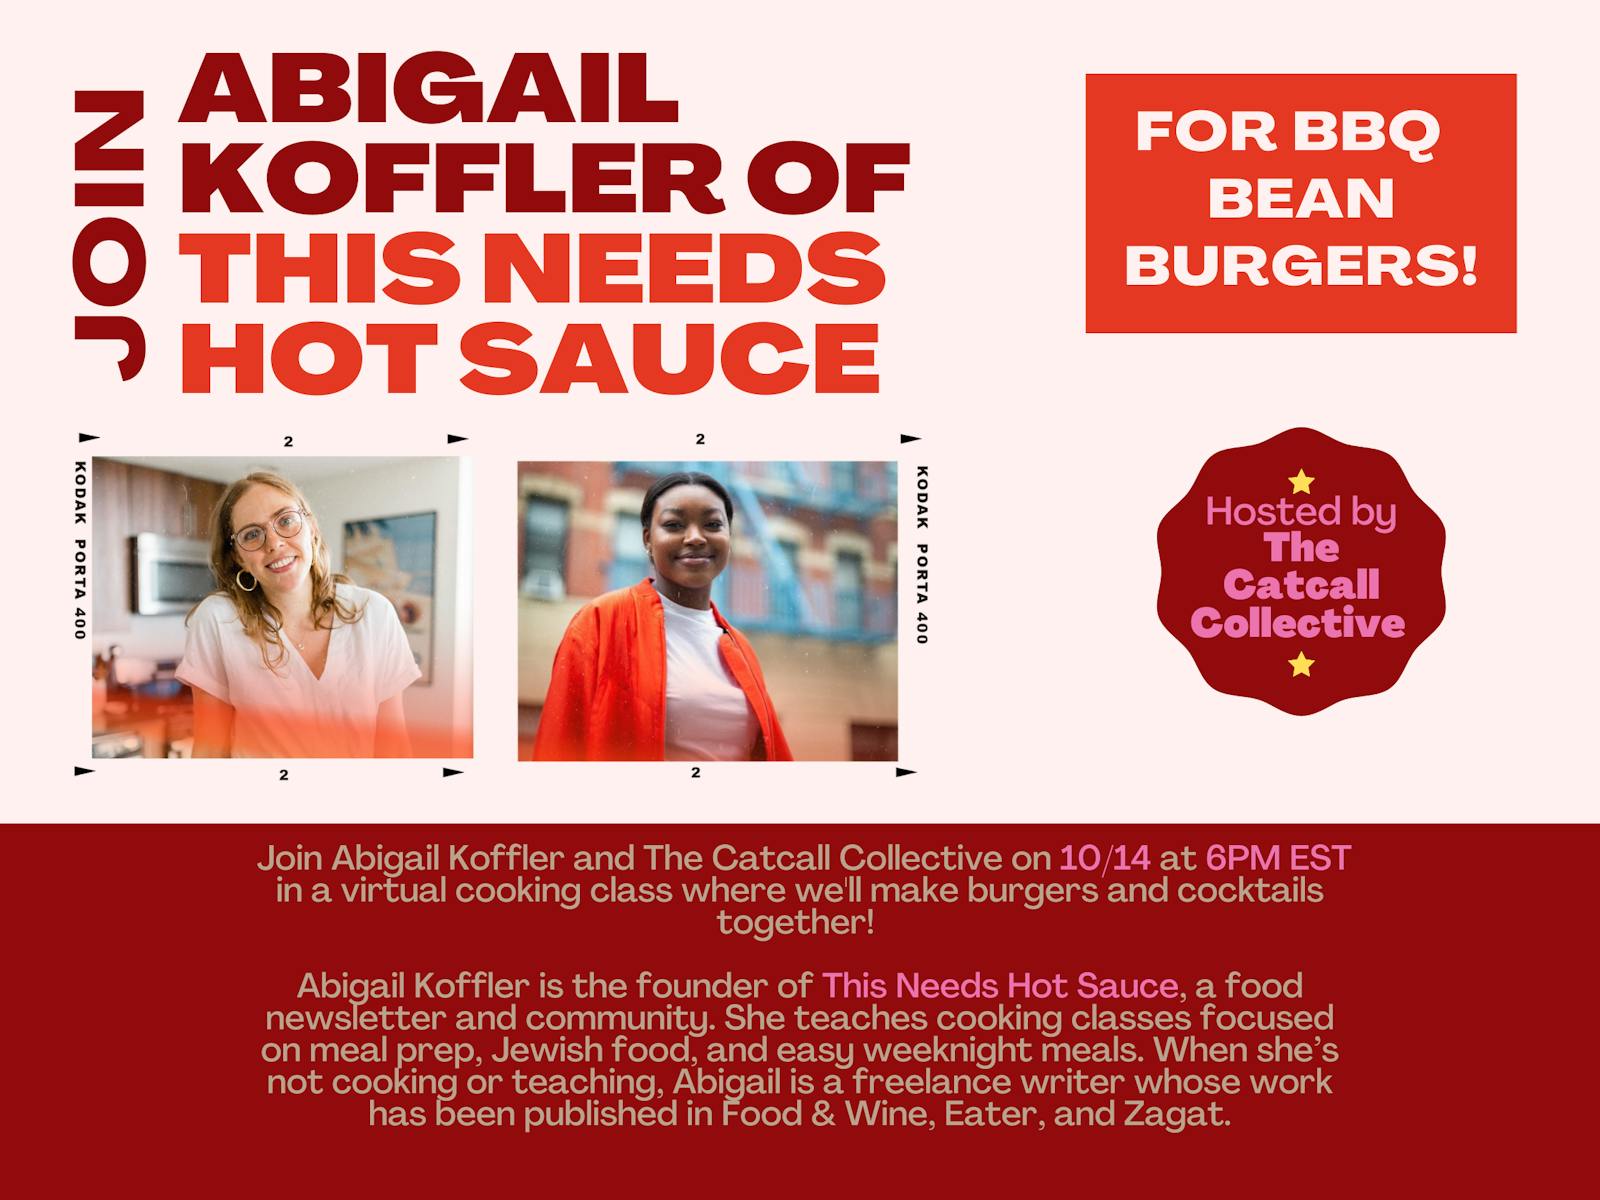 BBQ Bean Burgers with Abigail! 